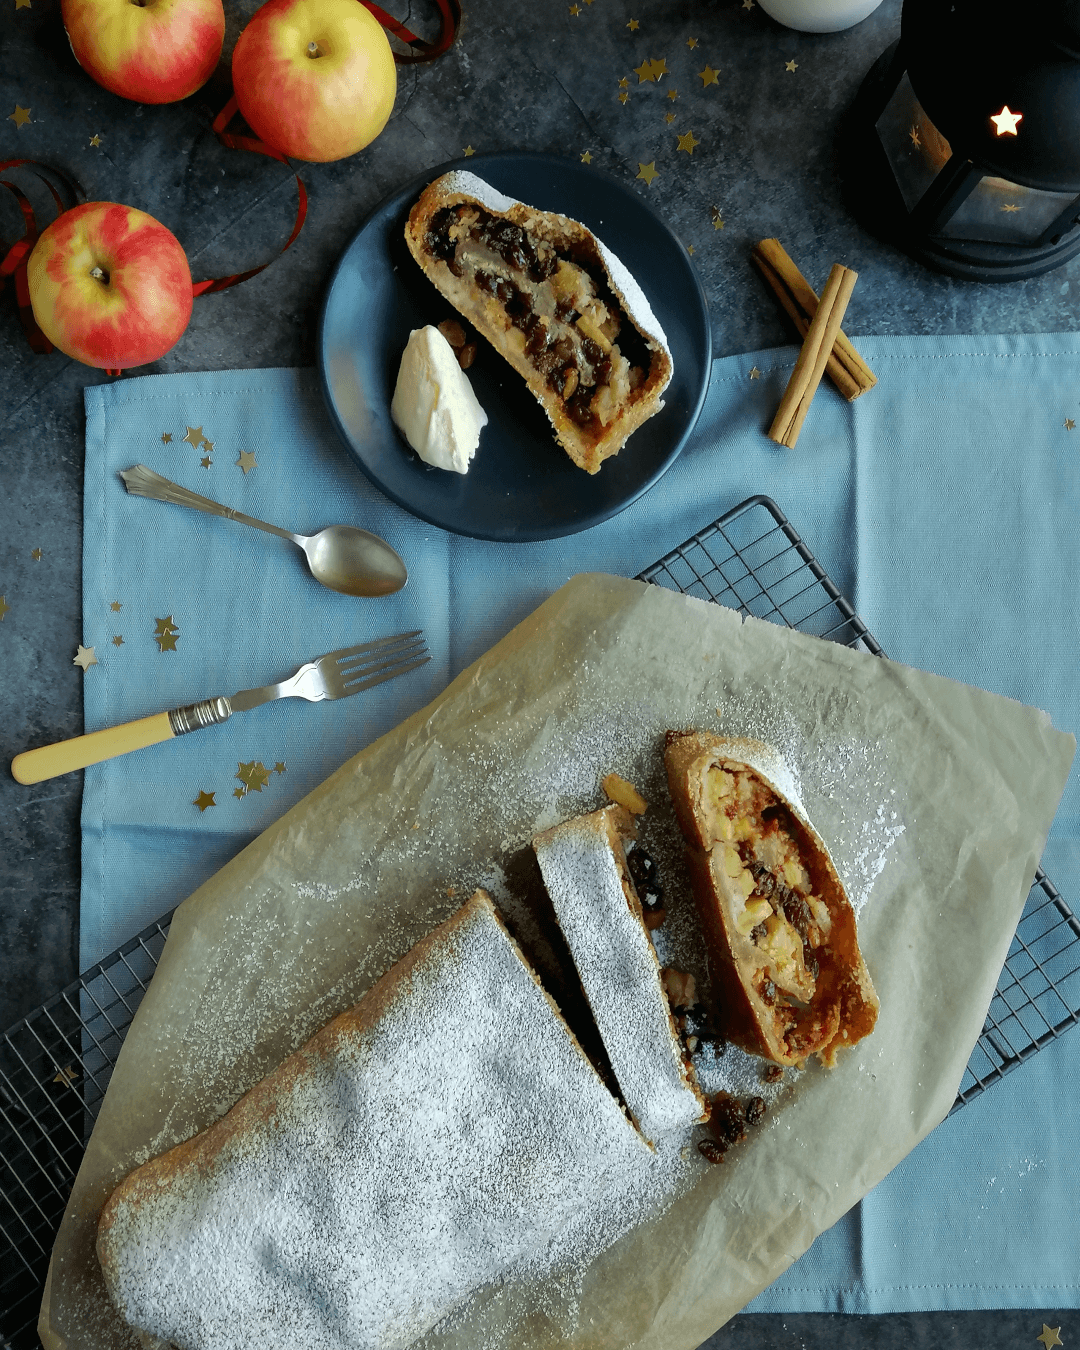 The Italian baker - Christmas apple strudel